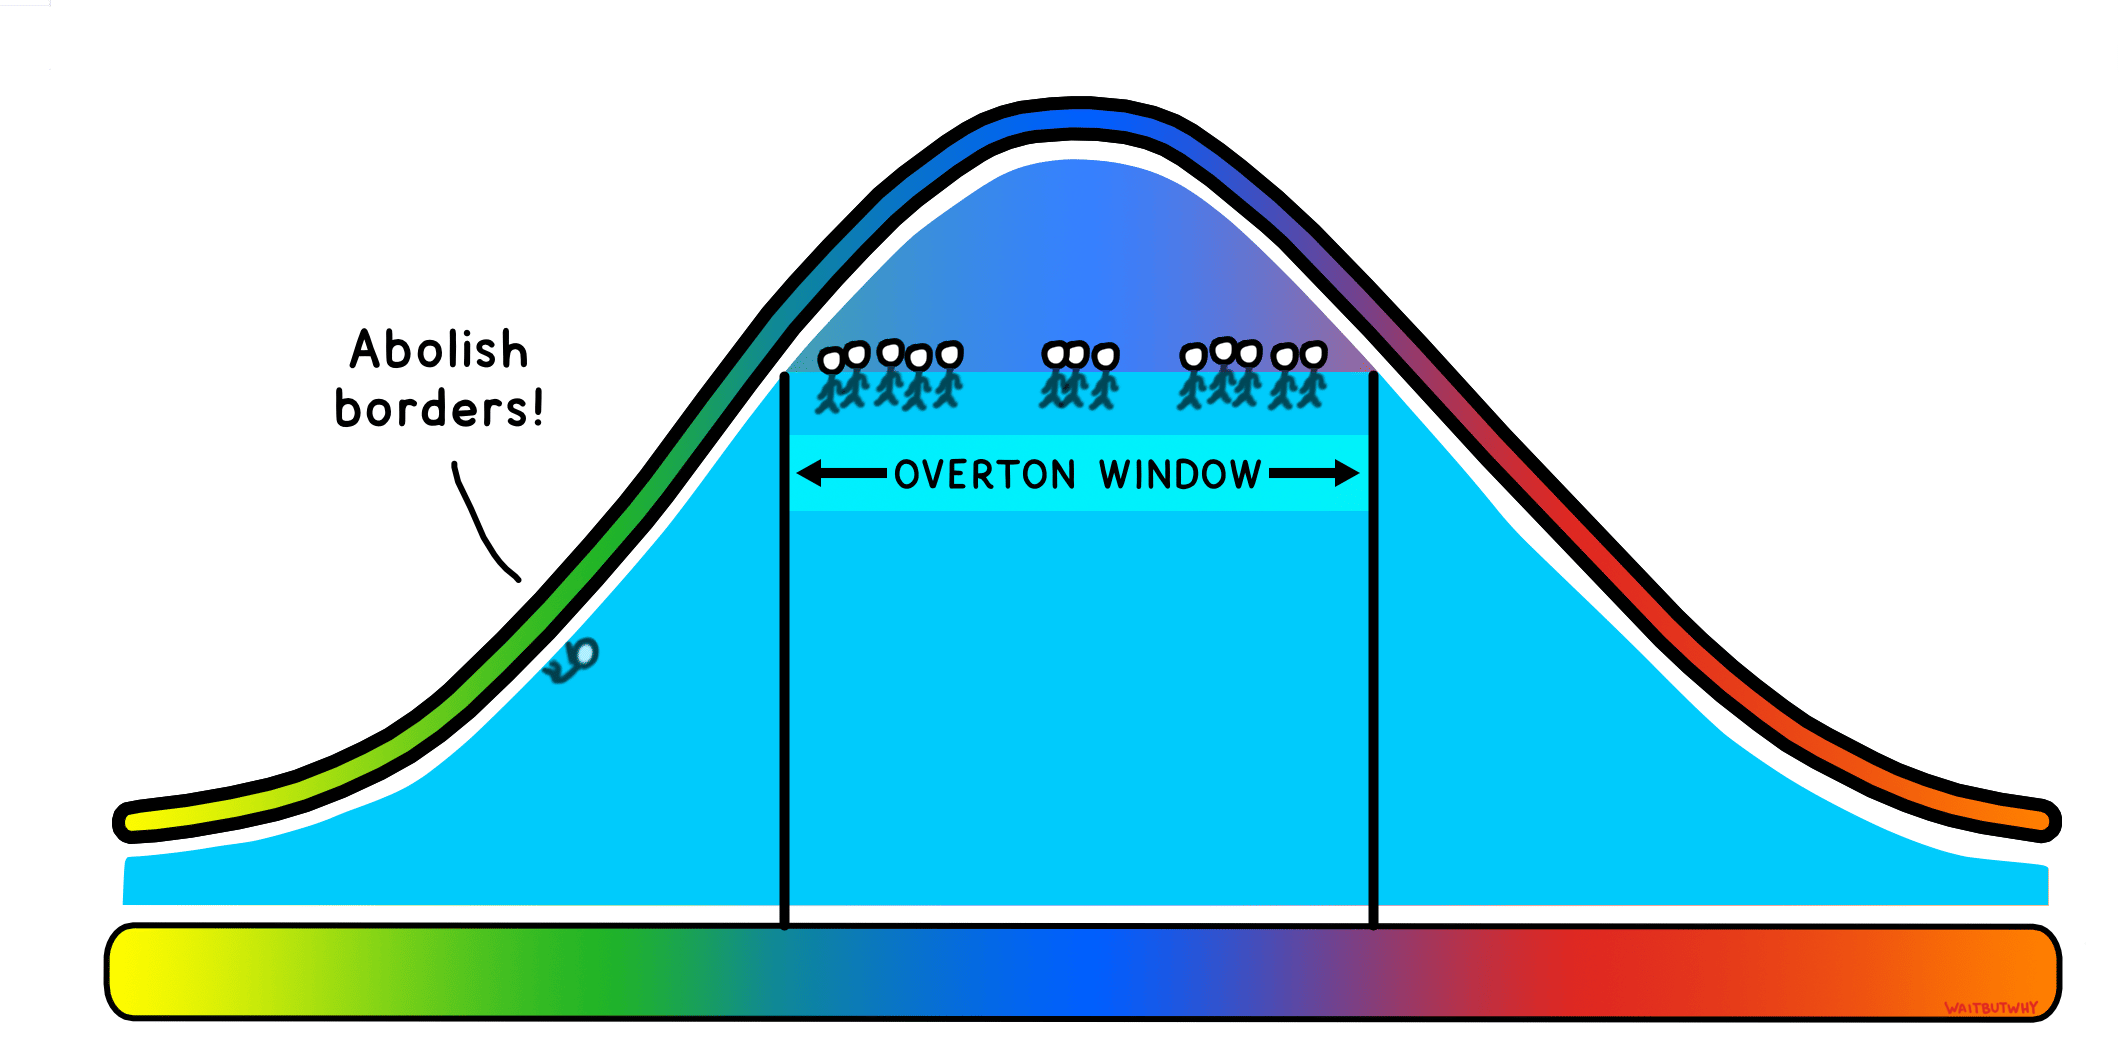 Overton window